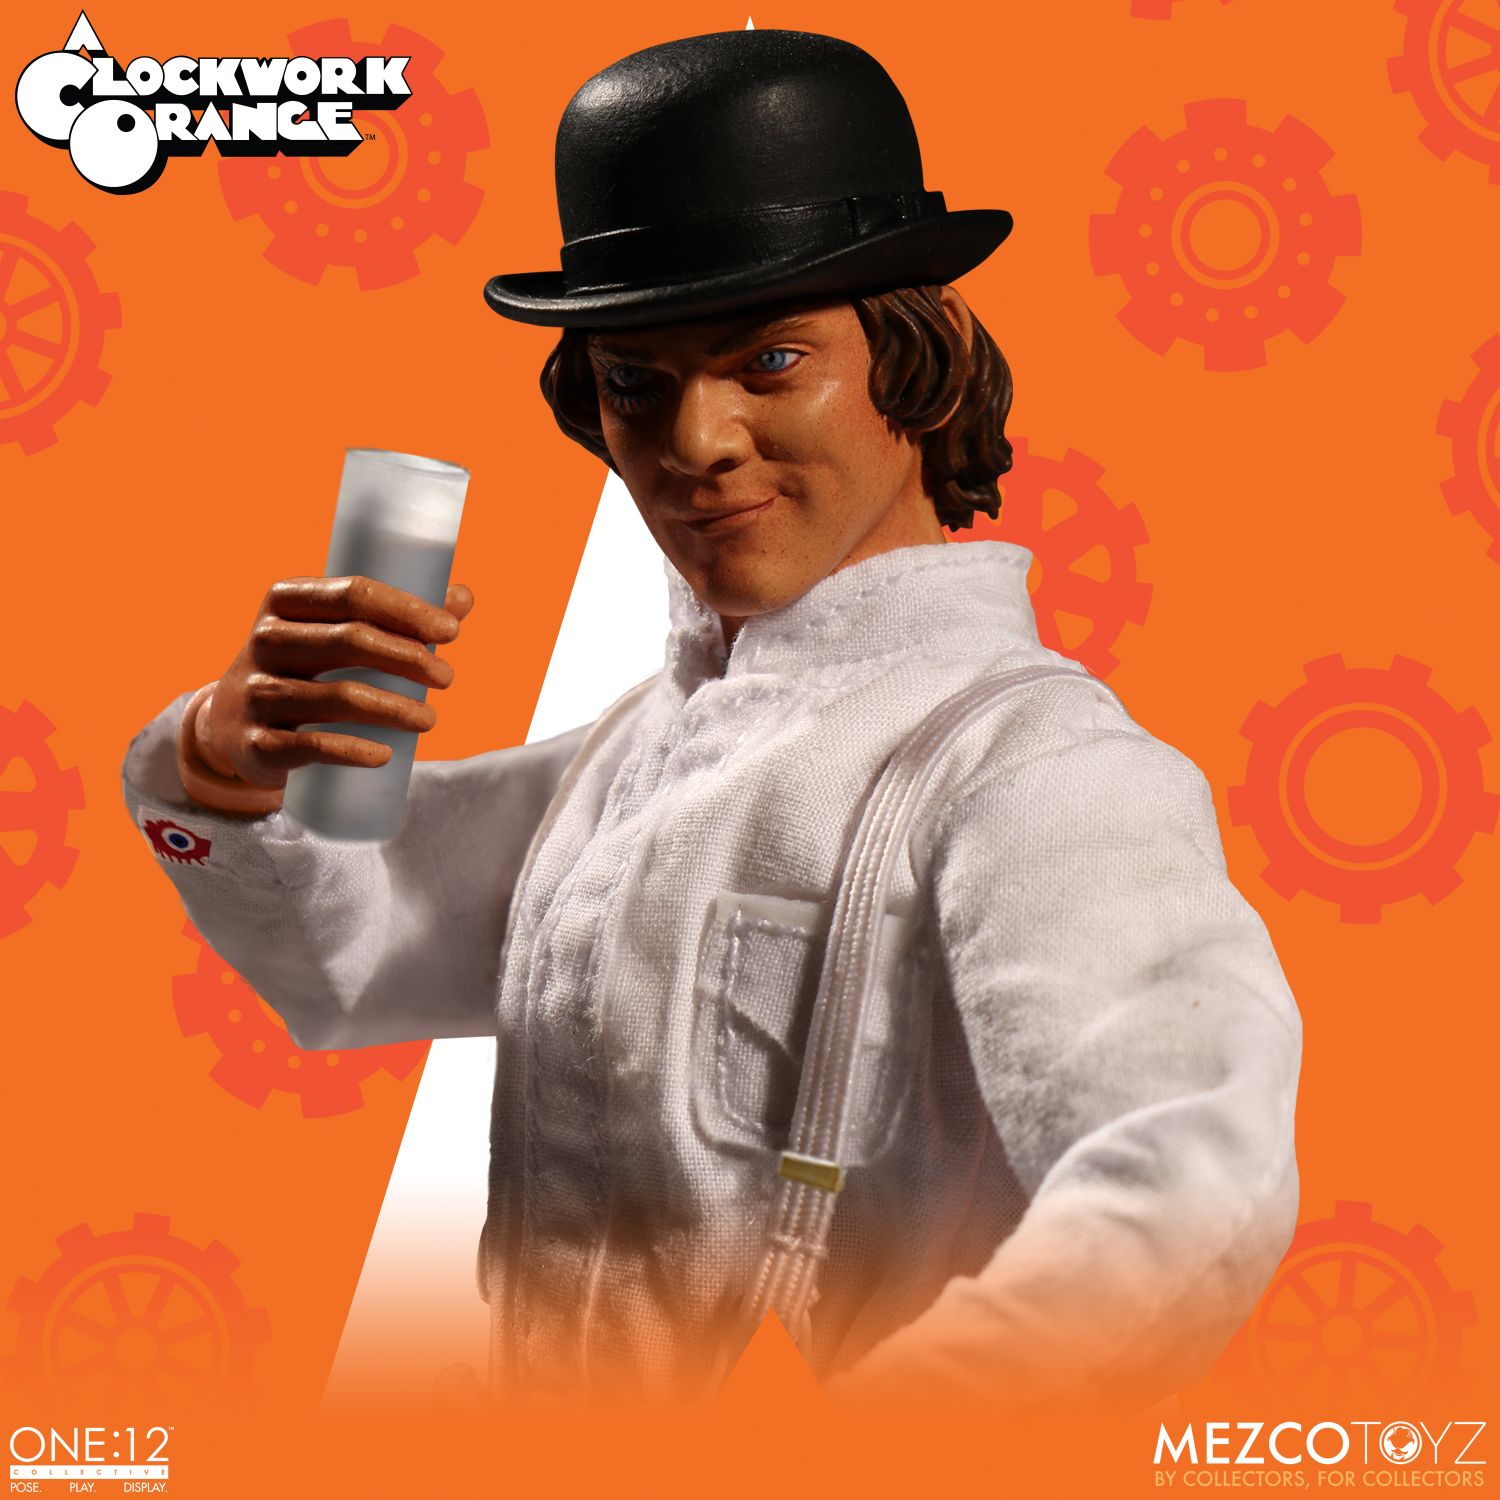 a clockwork orange mezco